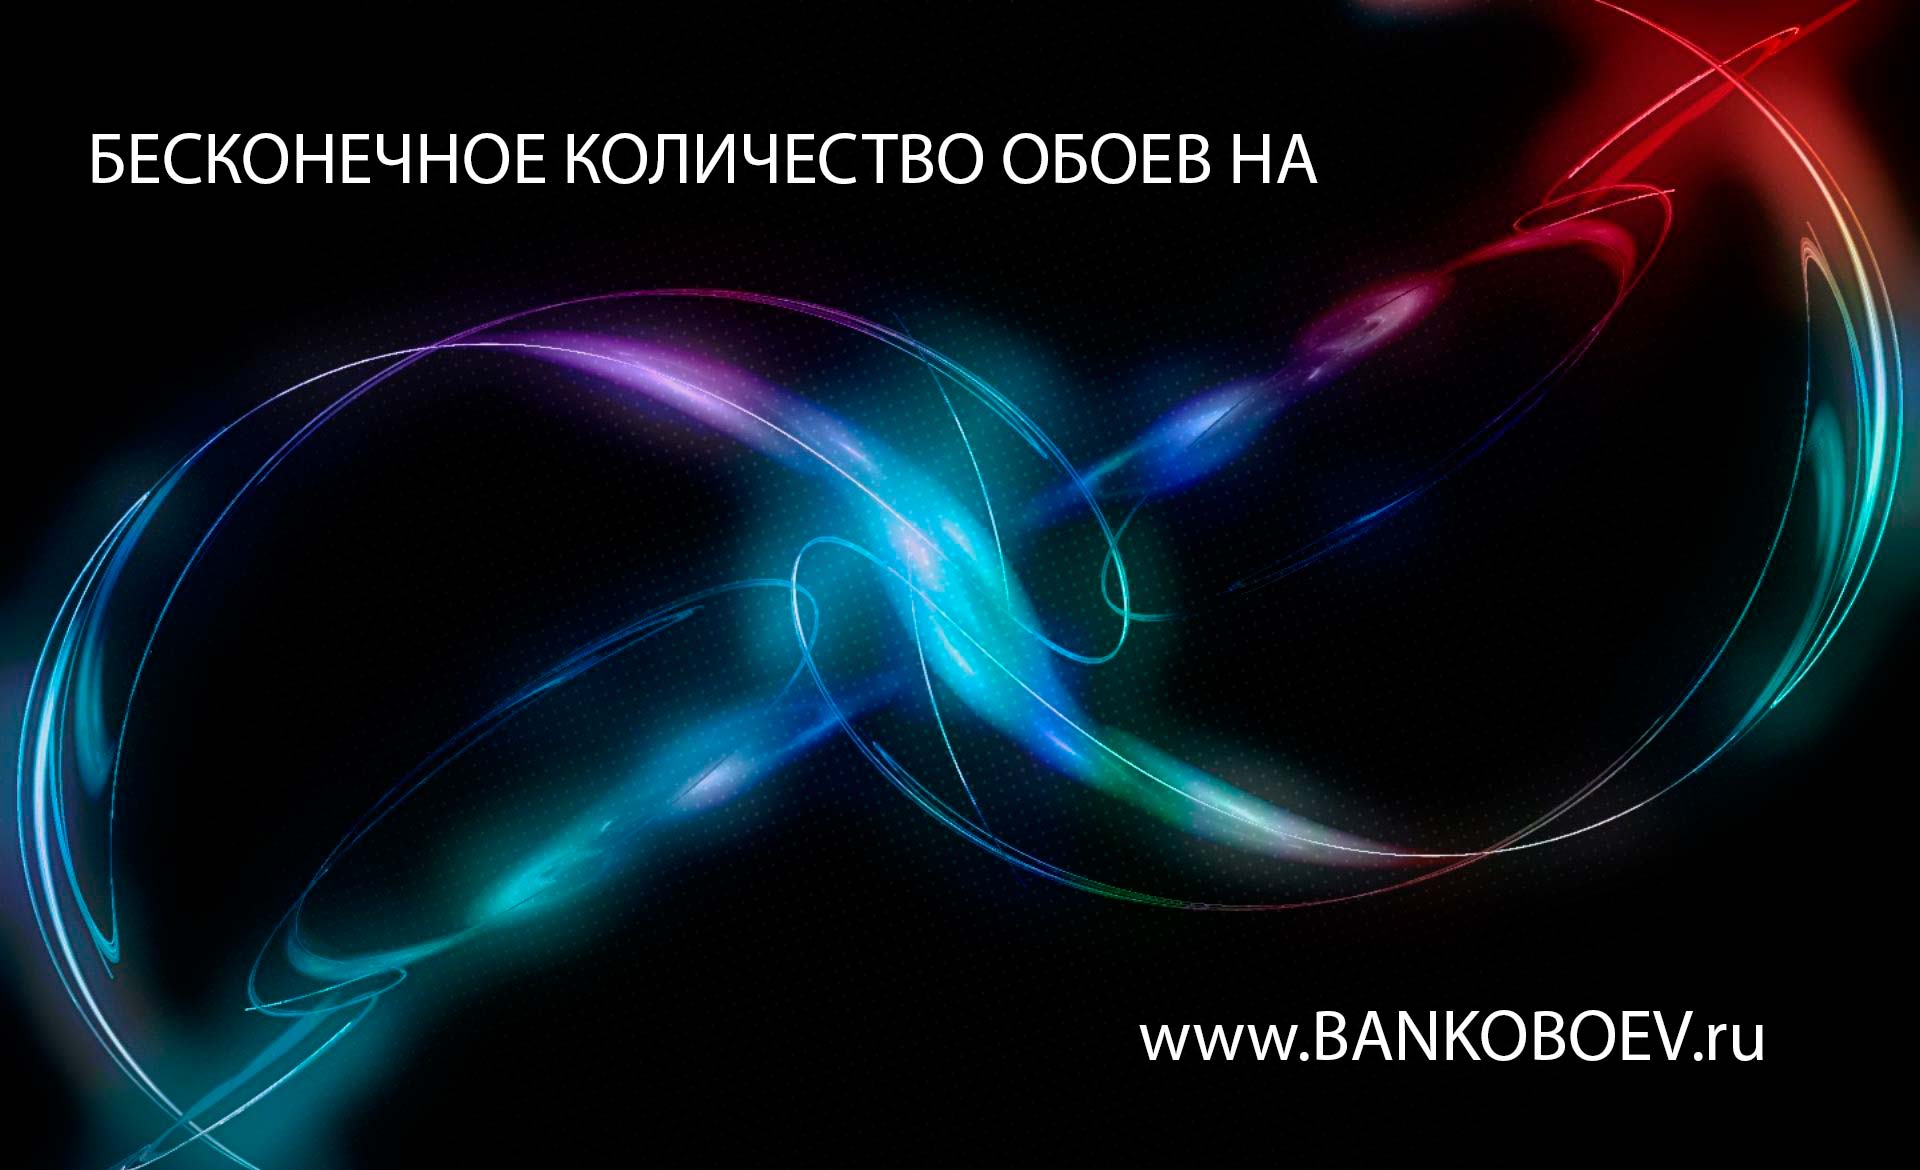 Bankoboev Ru Image Mte5nzi3 Jpg